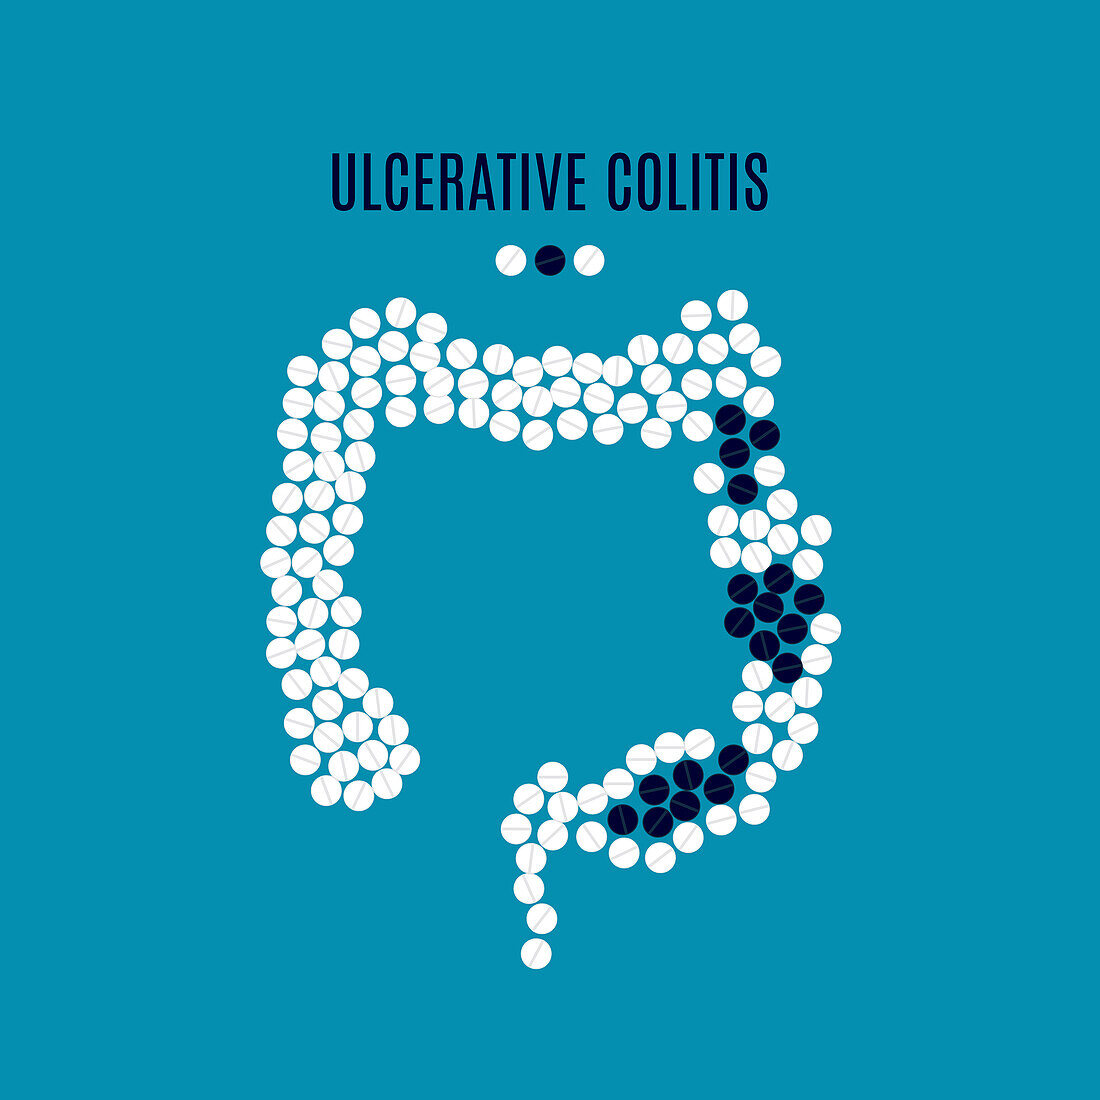 Ulcerative colitis, conceptual illustration